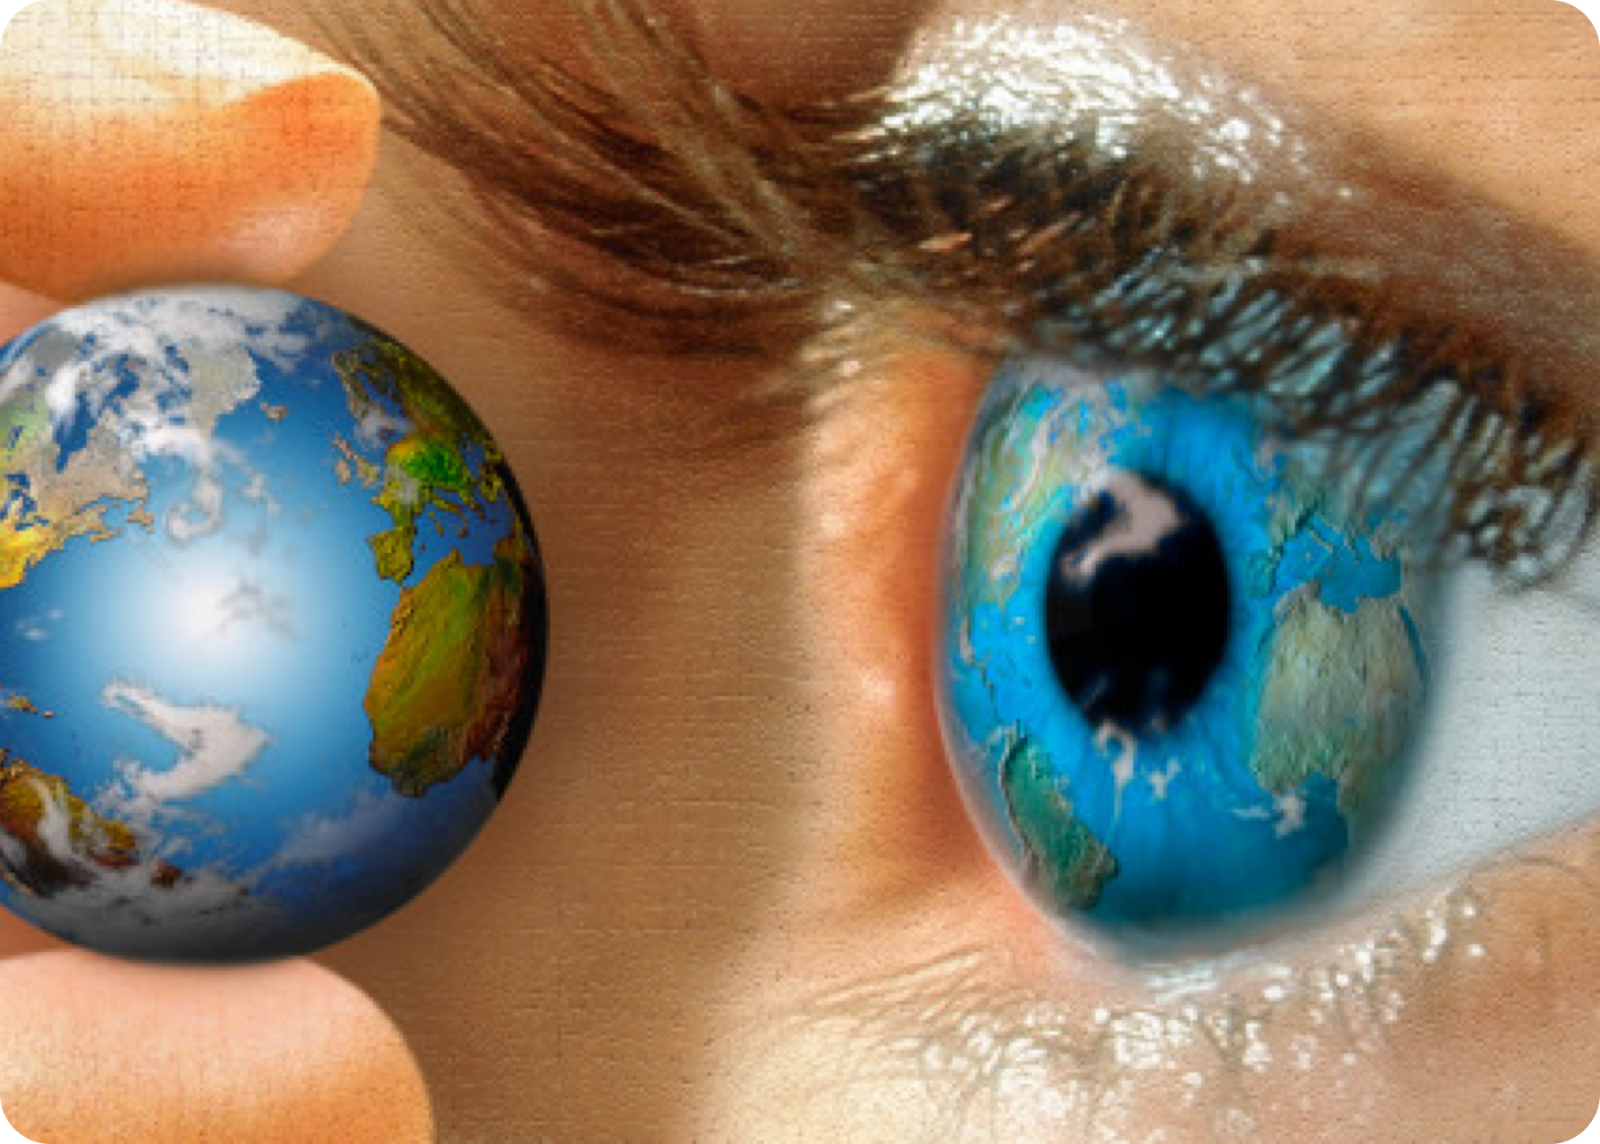 Информация через зрение. Мир глазами человека. Мир другими глазами. Мир перед глазами. Отражение планеты в глазу.